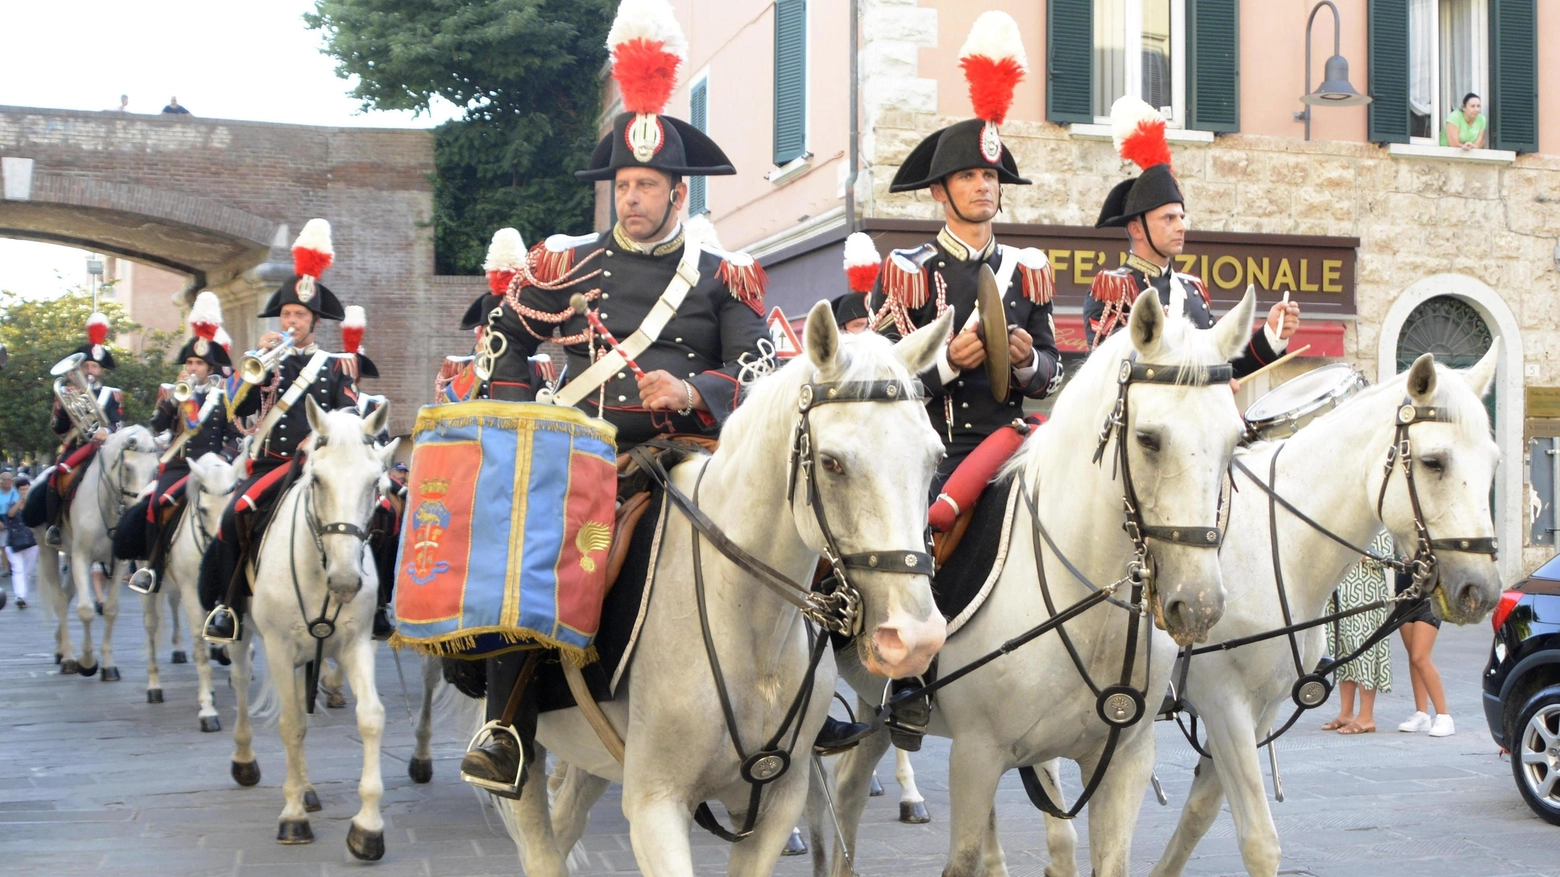 Cittadinanza onoraria ai Carabinieri  Che festa con la Fanfara a cavallo